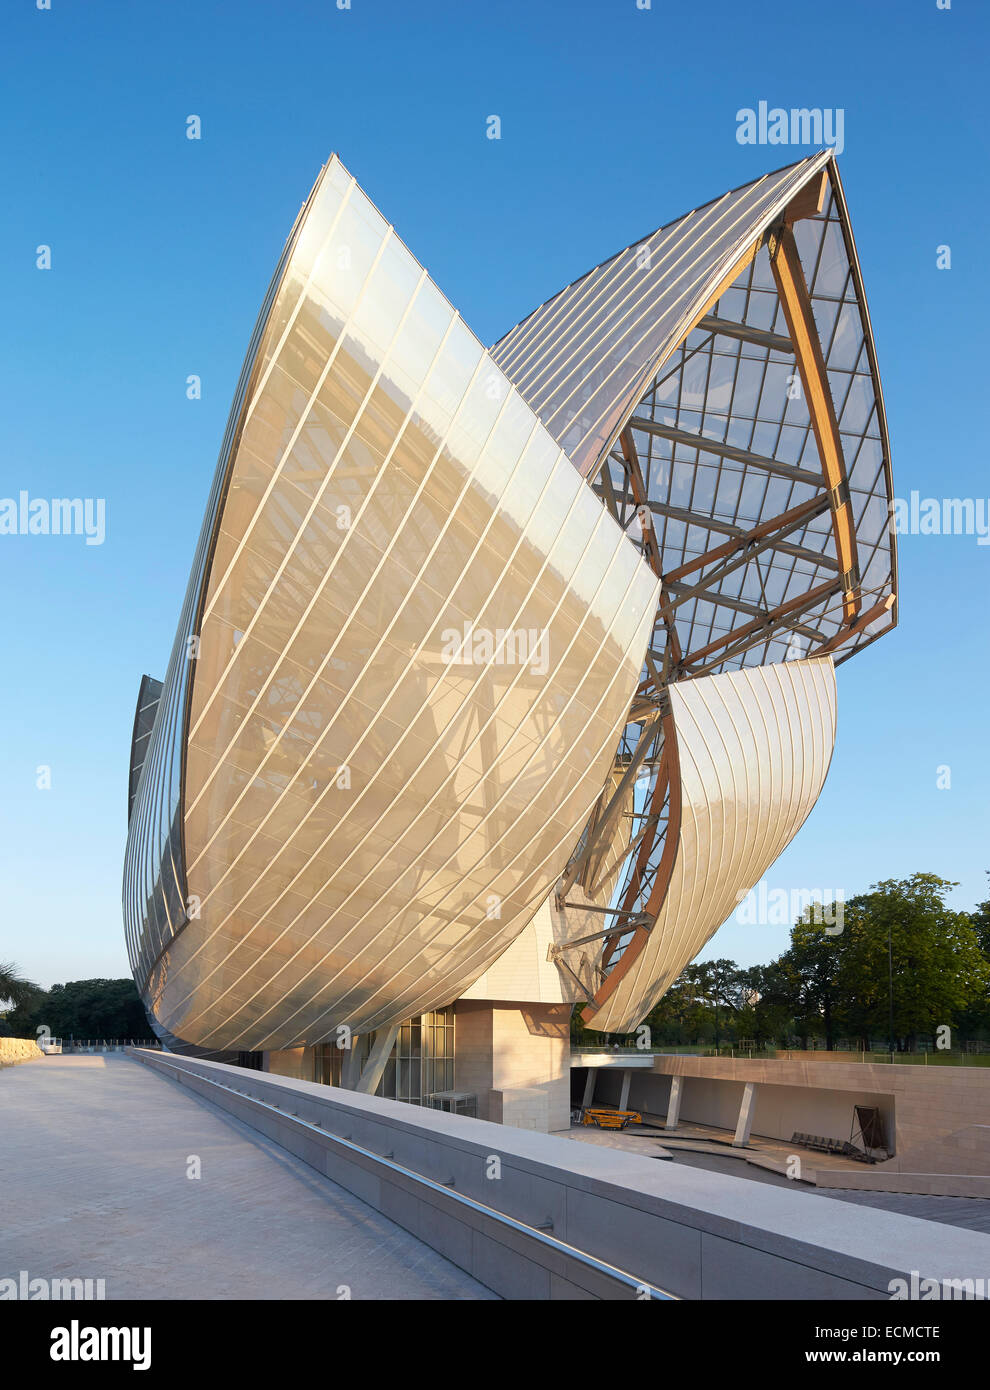 Fondation Louis Vuitton, Paris, France. Architect: Gehry Partners Stock Photo: 76666478 - Alamy